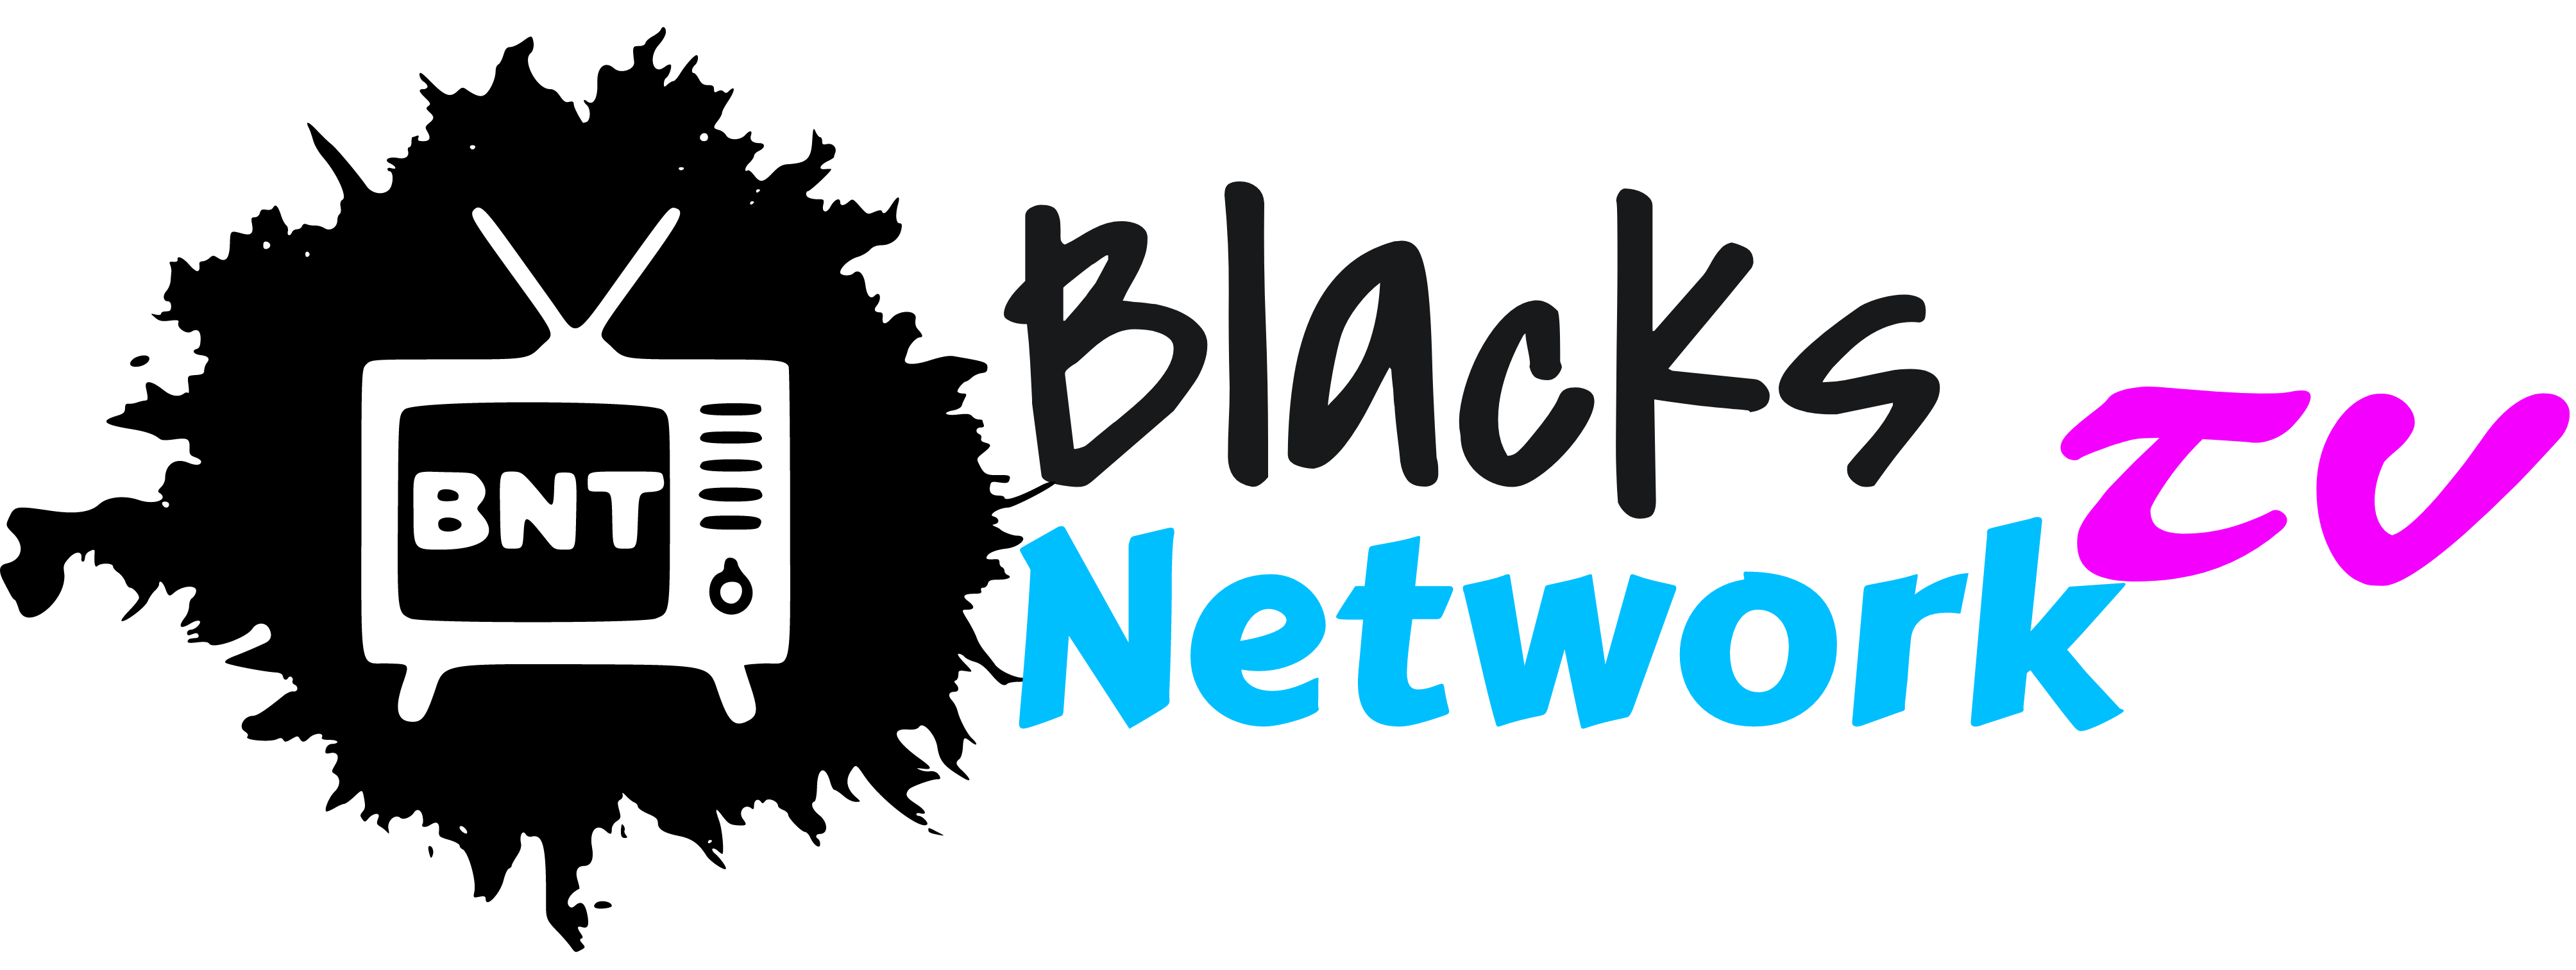 Blacks Network TV